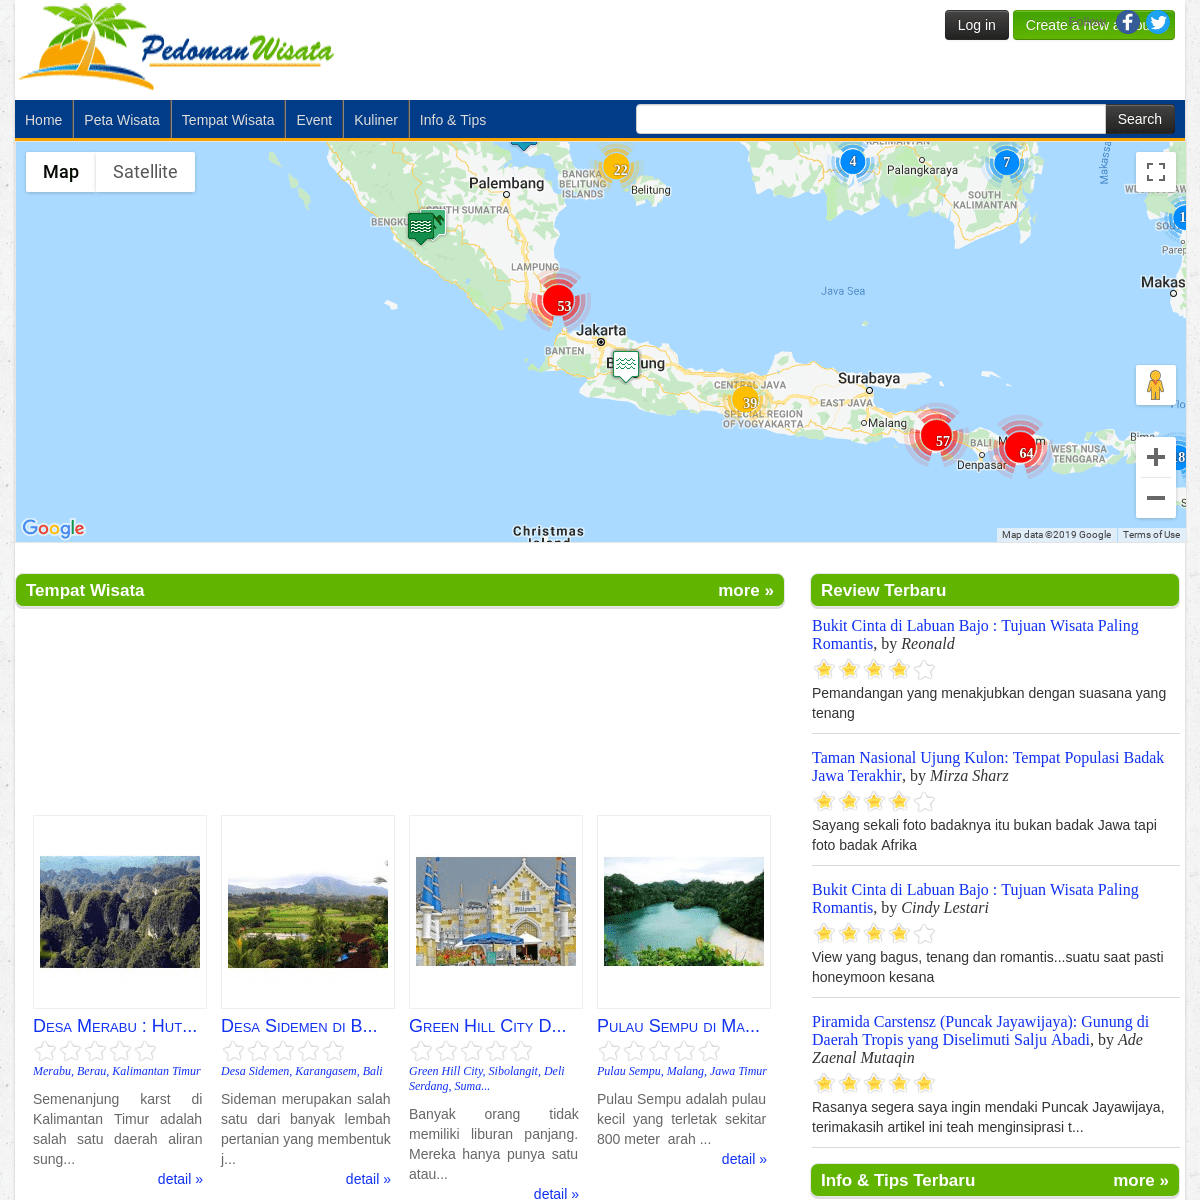 Pedoman Wisata - Informasi Lengkap Perjalanan Wisata